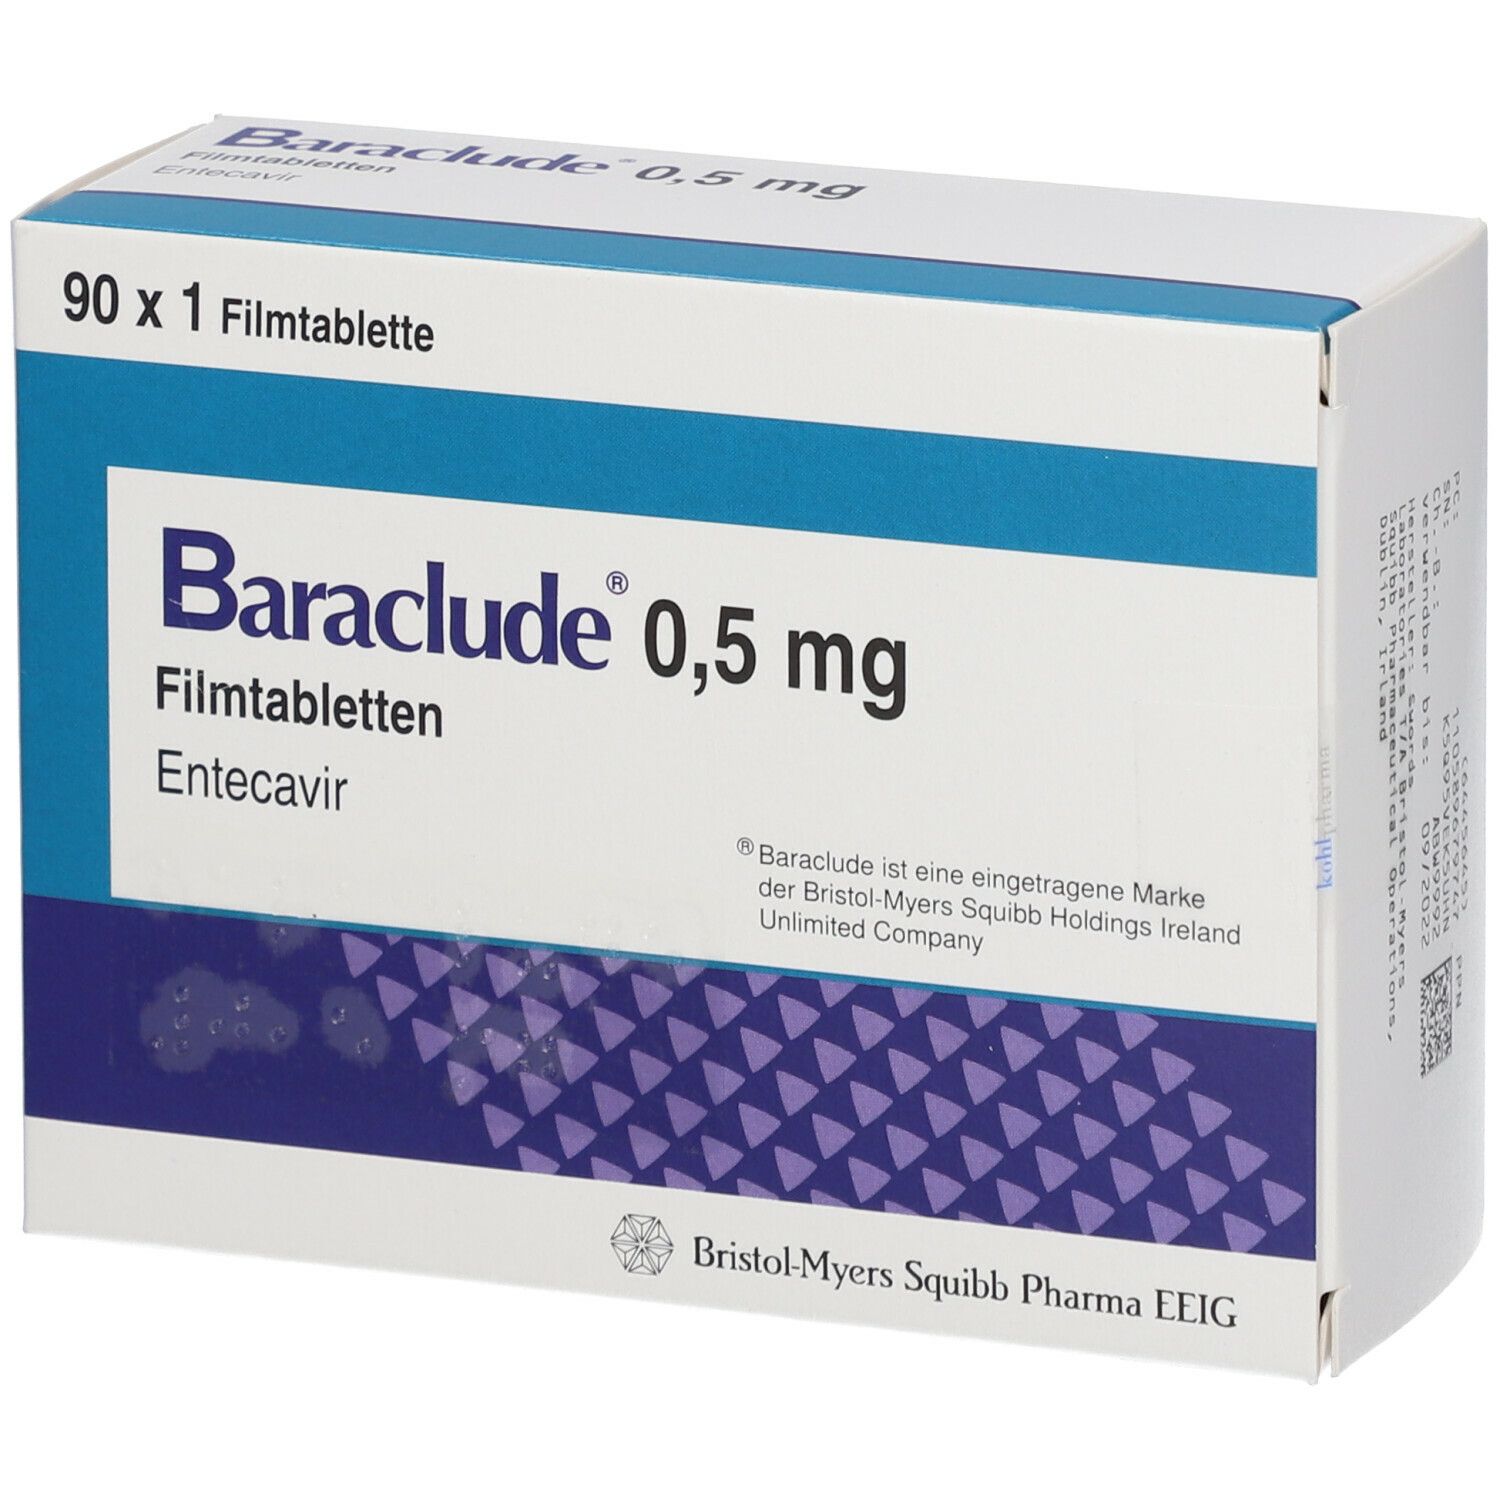 Baraclude 0,5 mg